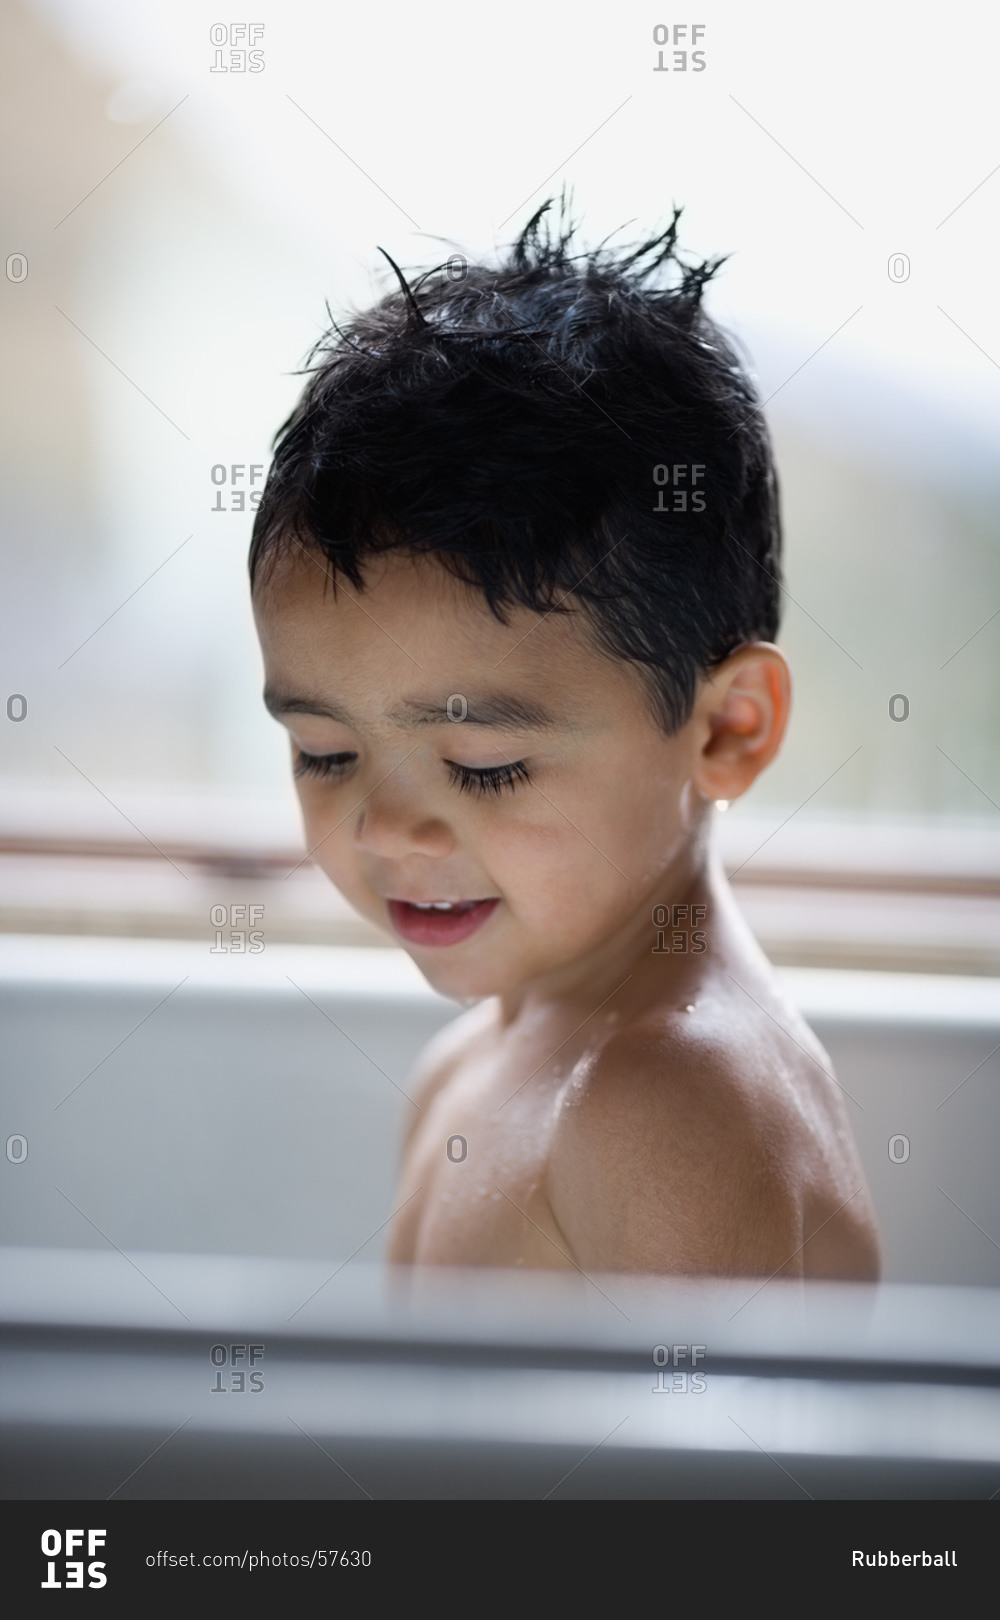 Boy in bathtub